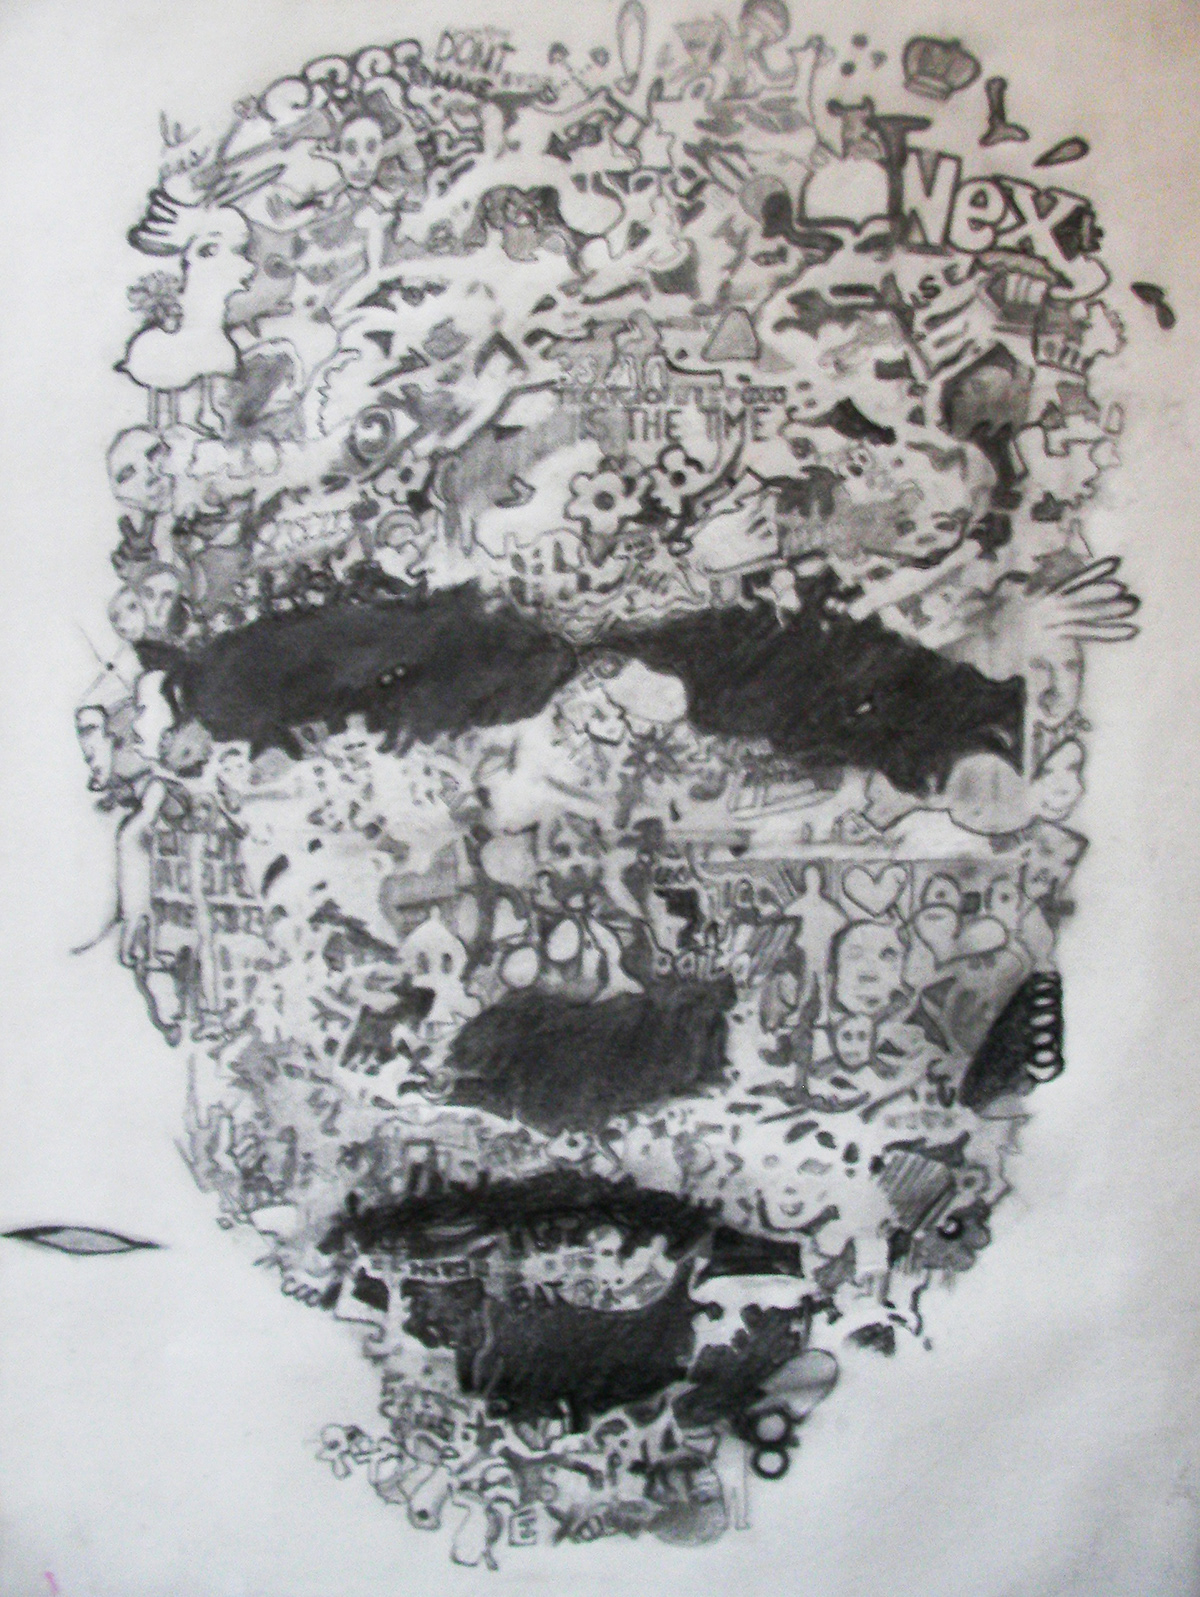 abstract human drawings masks